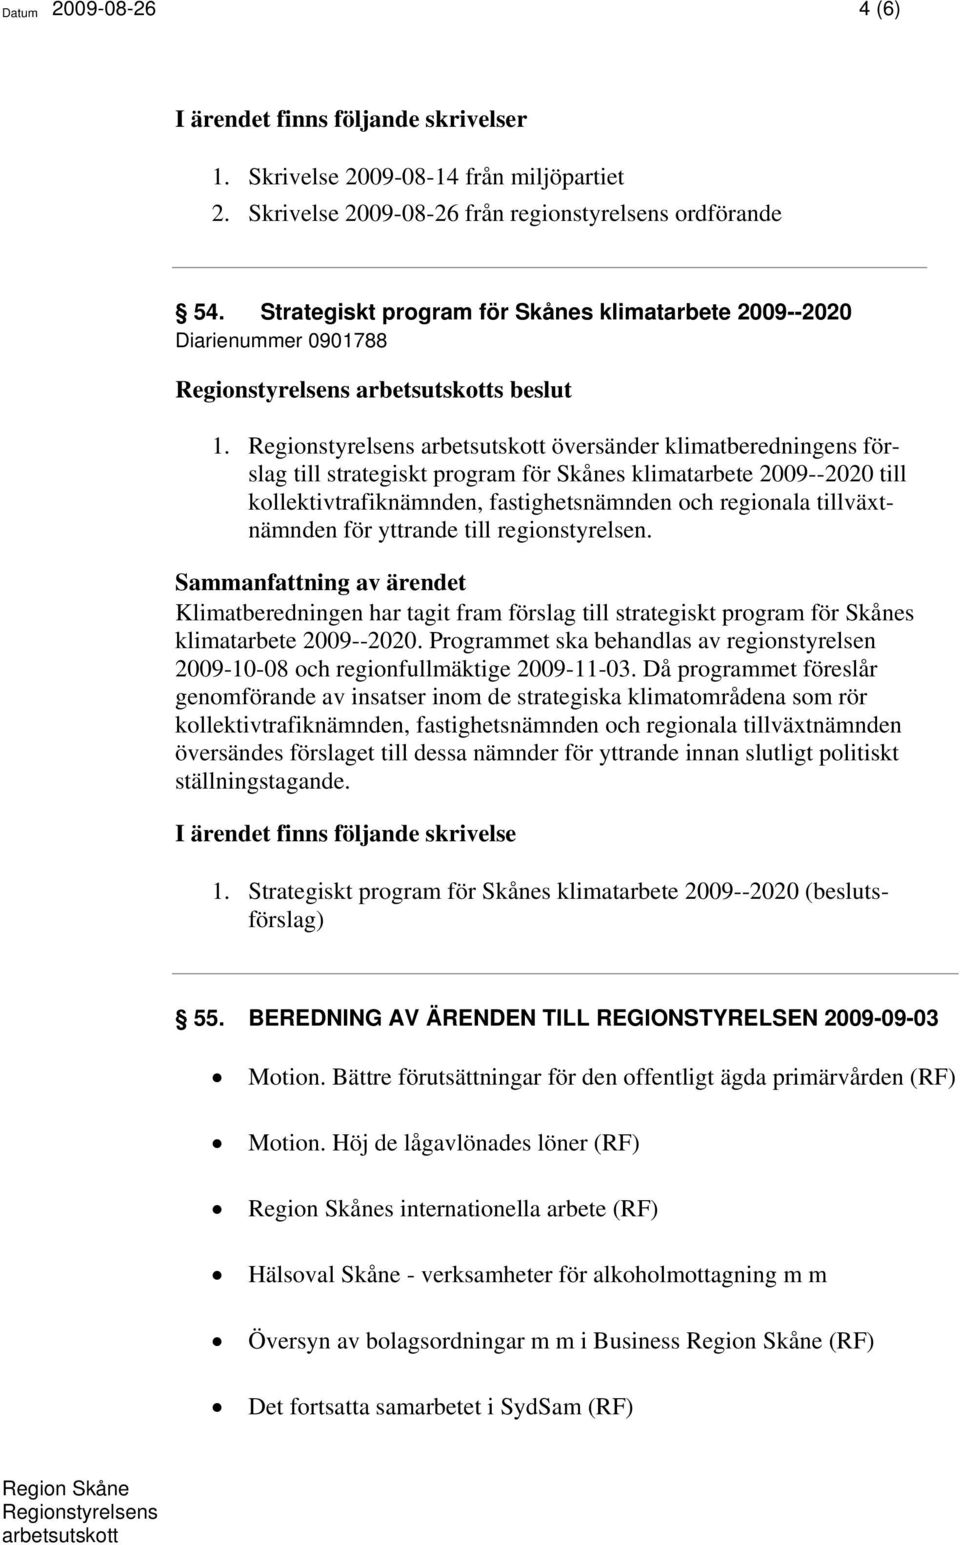 översänder klimatberedningens förslag till strategiskt program för Skånes klimatarbete 2009--2020 till kollektivtrafiknämnden, fastighetsnämnden och regionala tillväxtnämnden för yttrande till